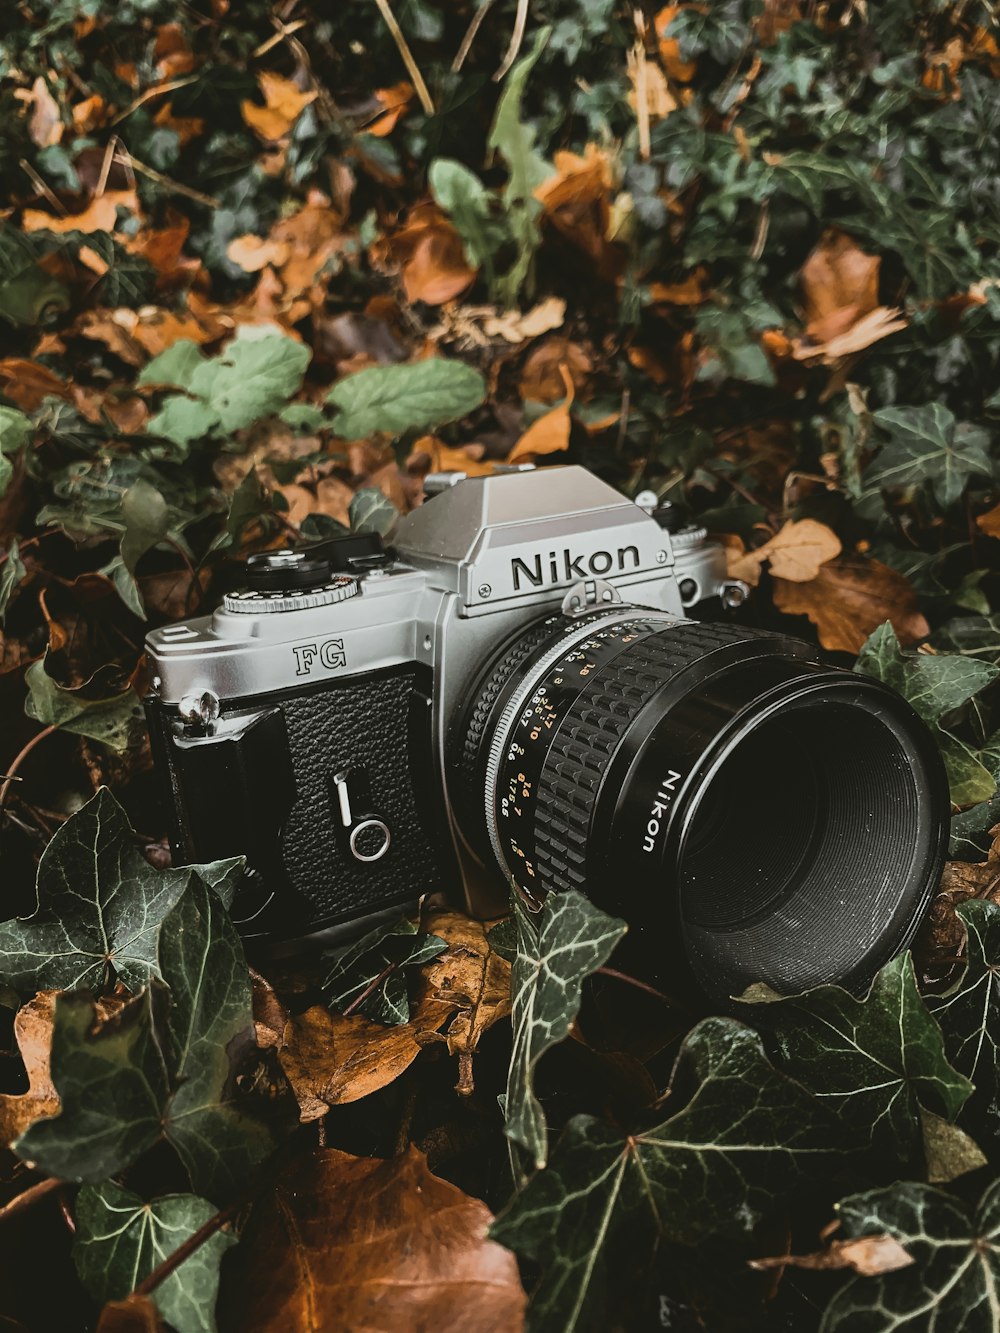 Appareil photo reflex Nikon gris et noir